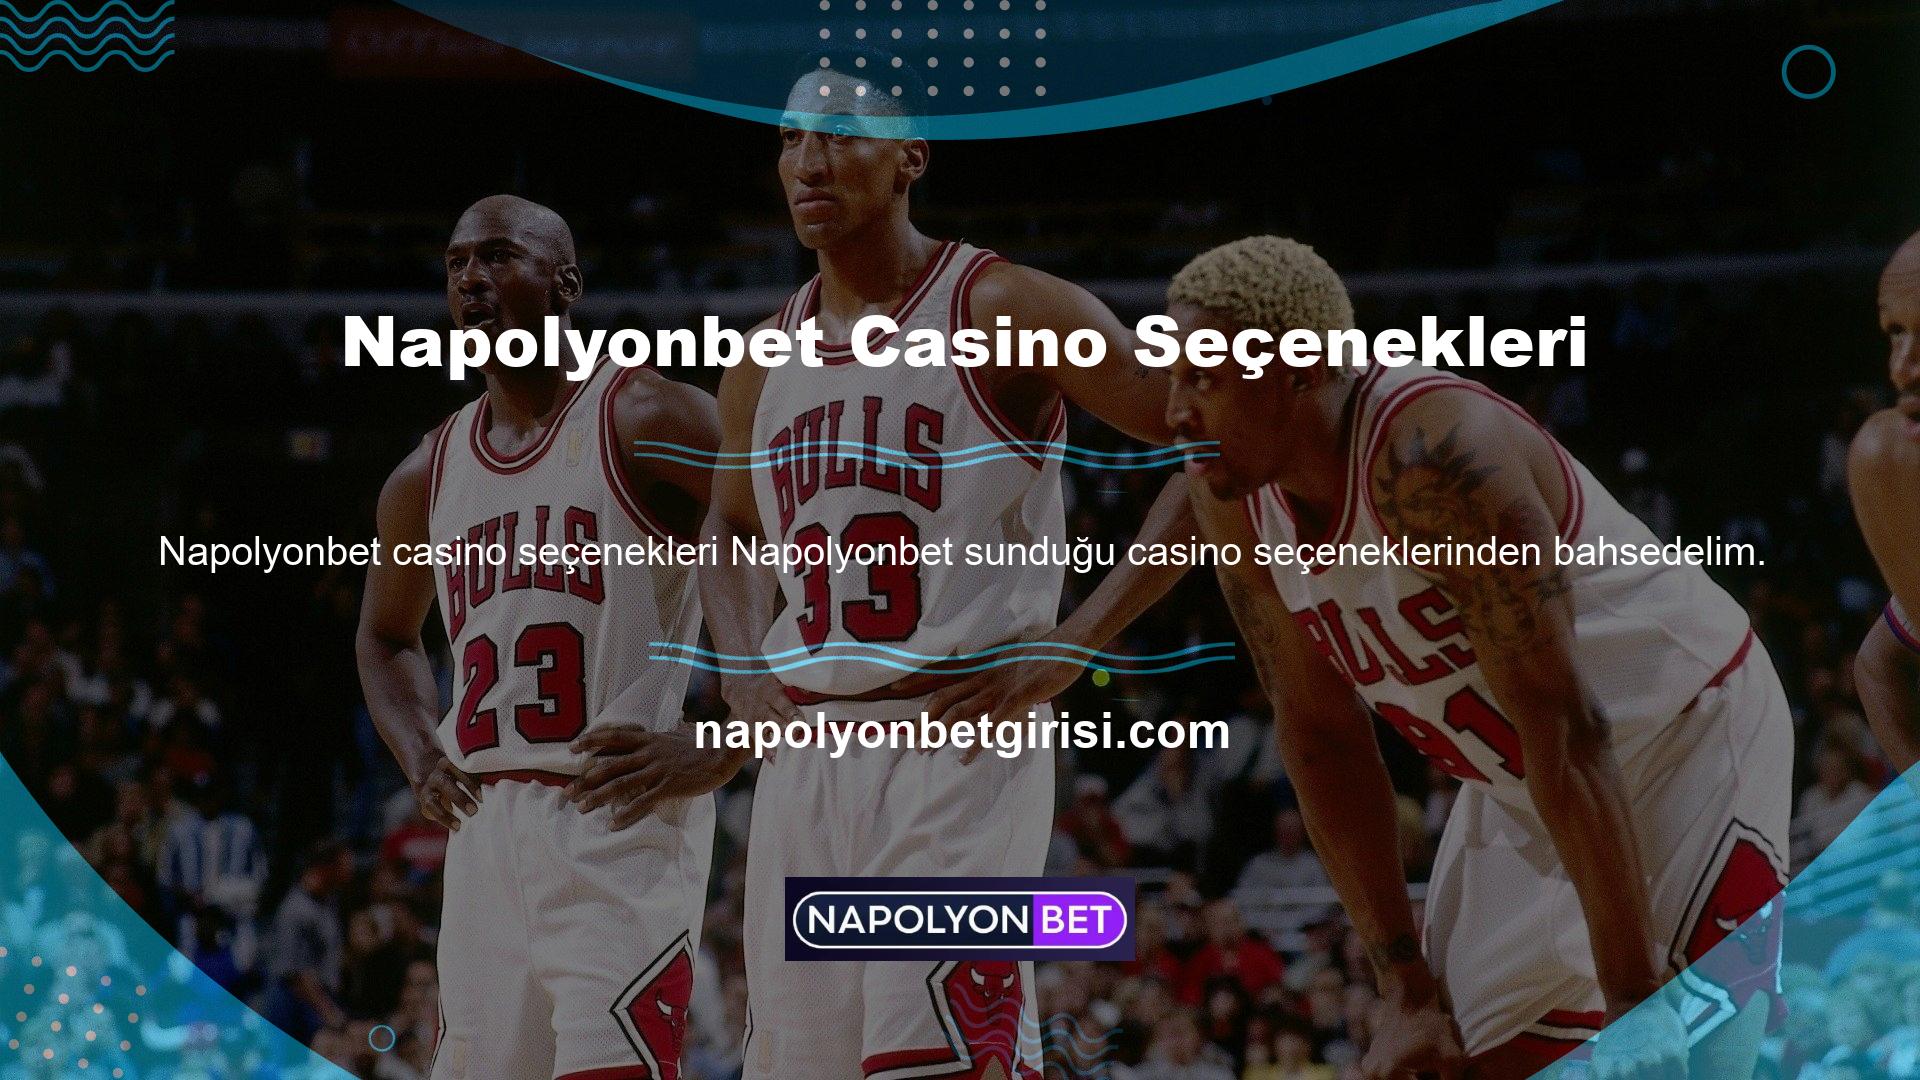 Napolyonbet Casino dünyası iki kategoriye ayrılabilir: Canlı Casino ve Slotlar